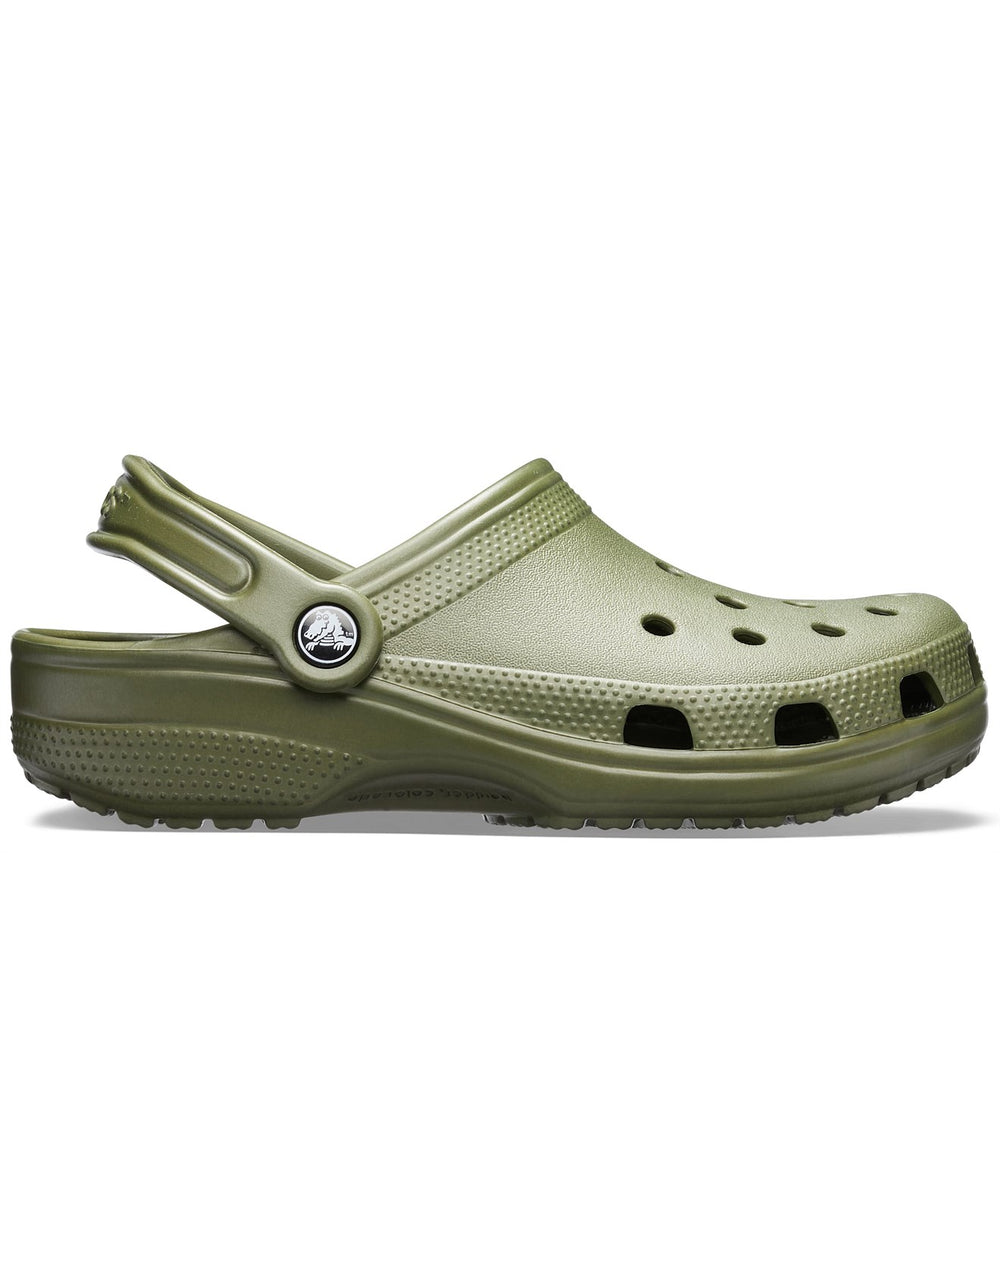 Crocs Classic Clog - Army Green Shoes Crocs   